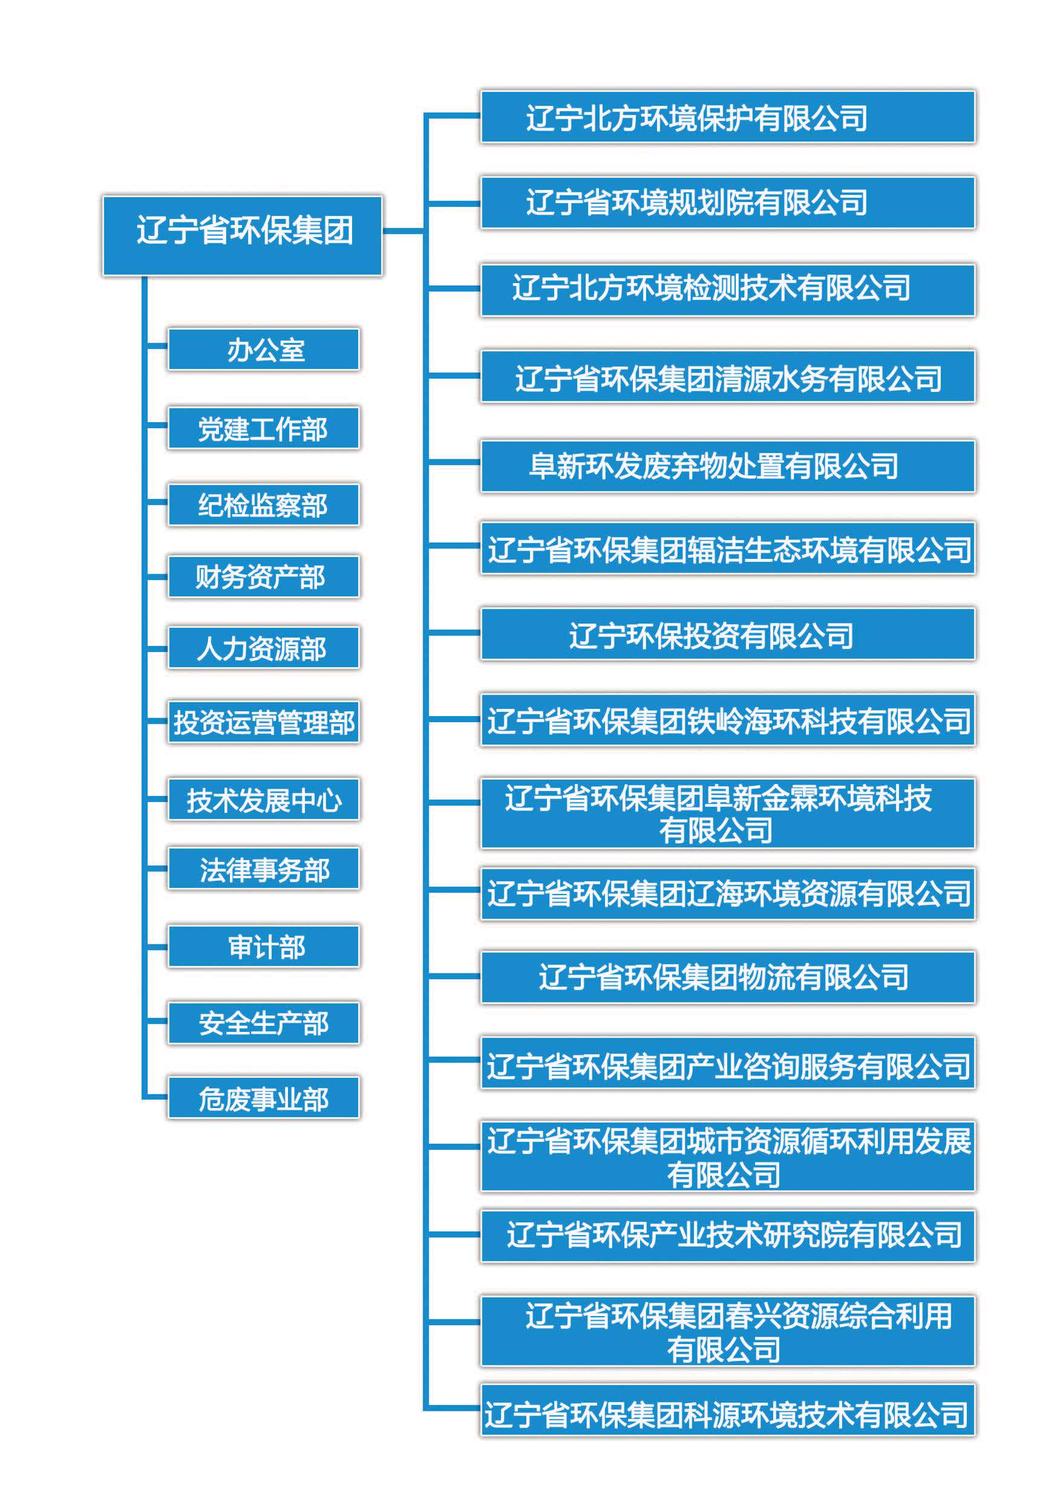 bg真人官方网站(中国)有限公司股权分布图20220419.jpg